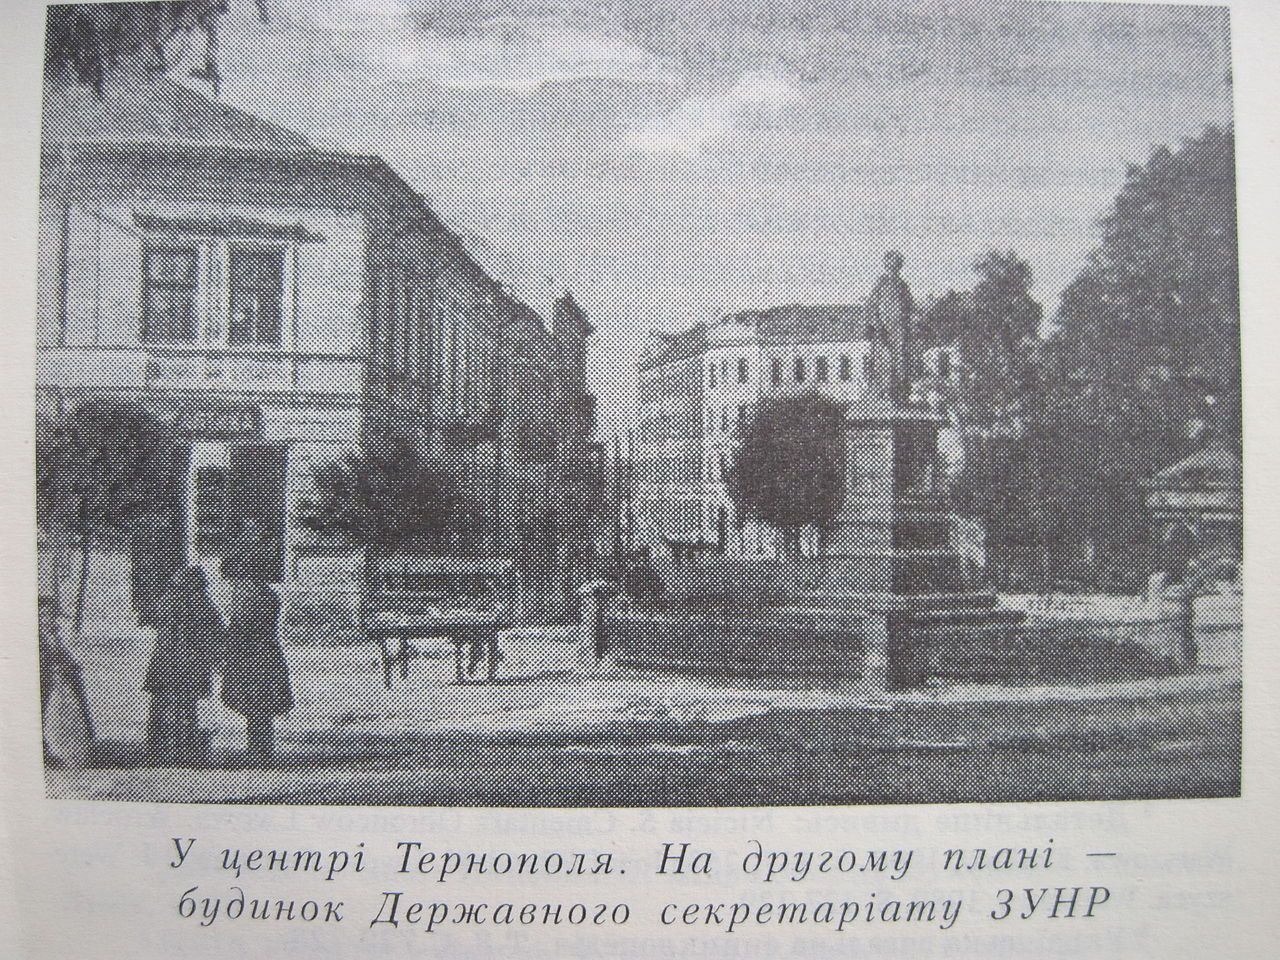 Старий Тернопіль. Майдан біля театру. Позаду - будівля держсекретаріату ЗУНР - фото 124656